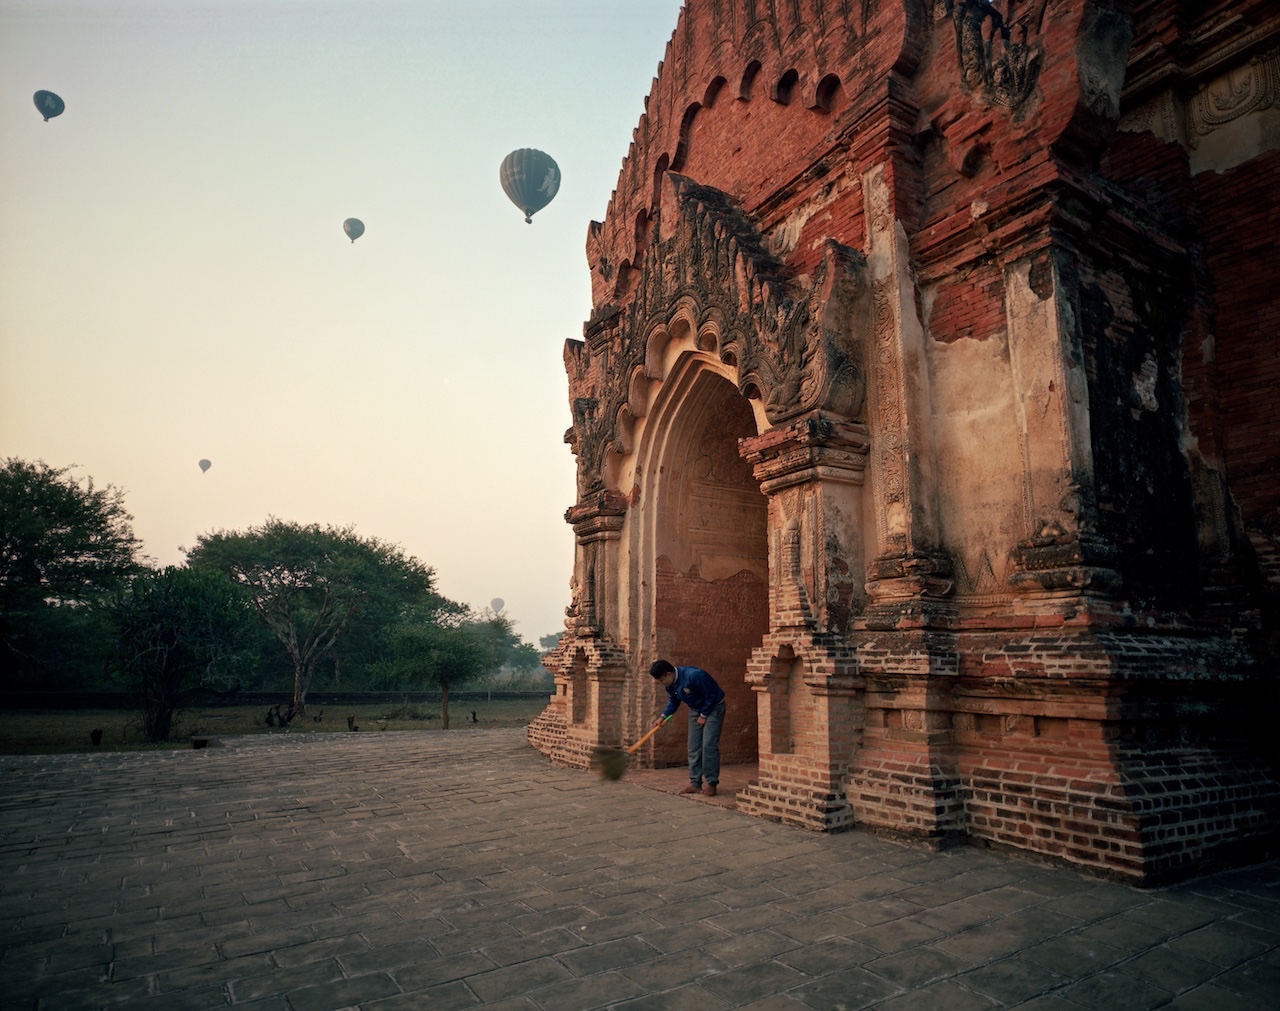 Myanmar, Bagan